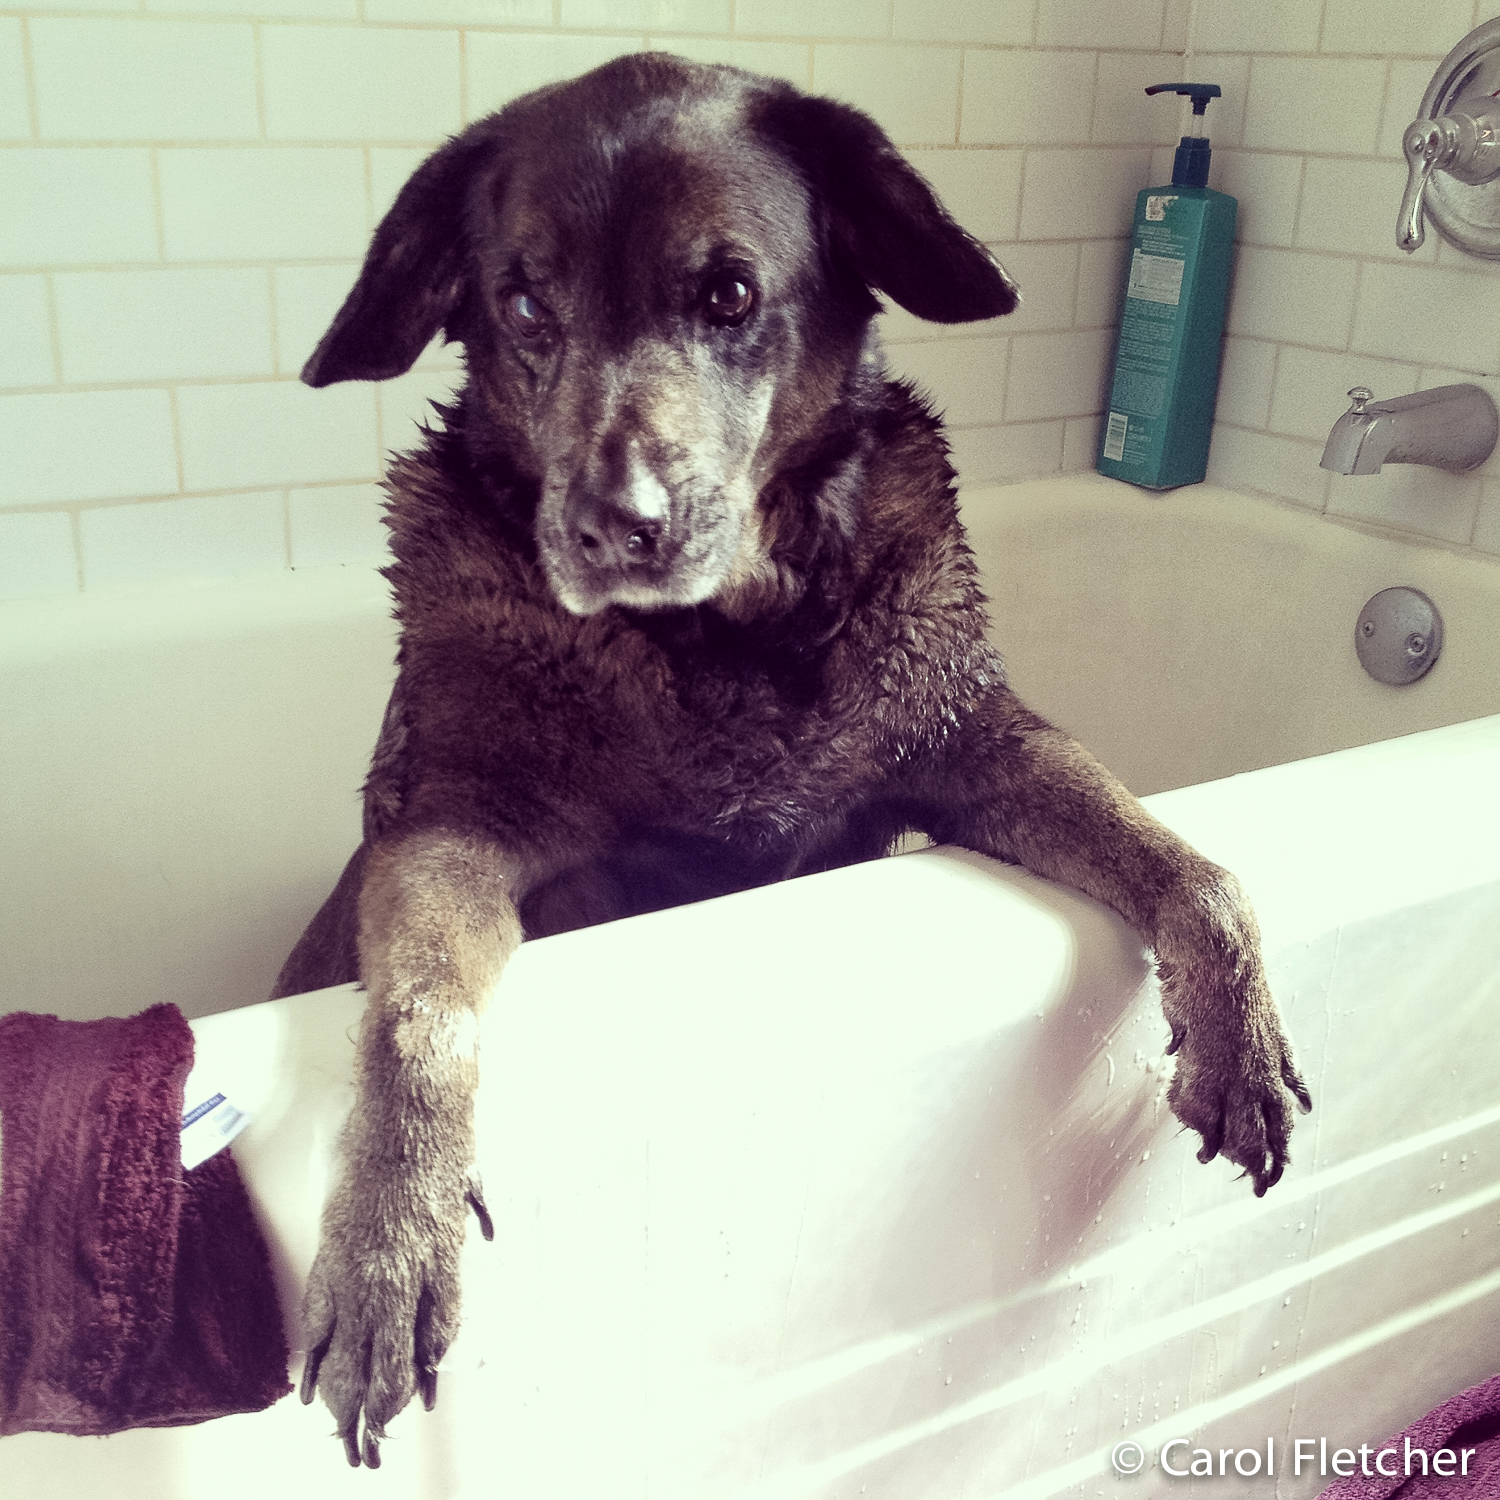 Deskunking a dog in a bathtub